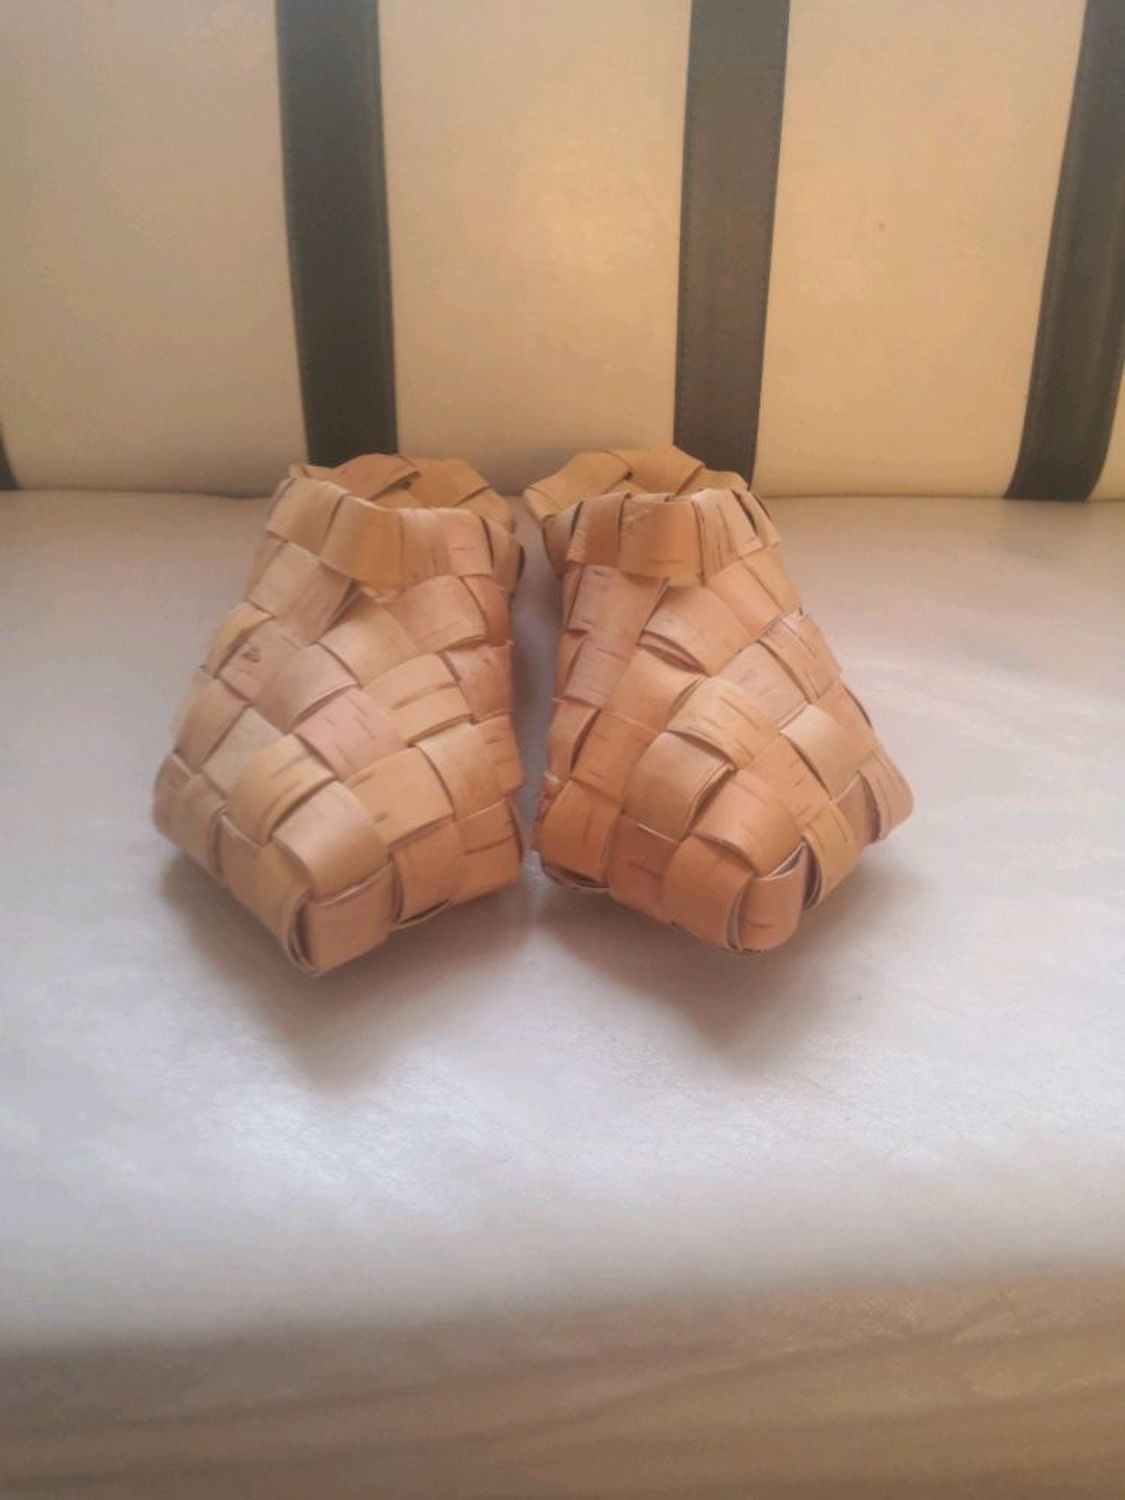 Photo №3 к отзыву покупателя Kodolov Aleksej о товаре Тапки, шлёпки из бересты "треугольные", р-р 36-45. Обувь для бани